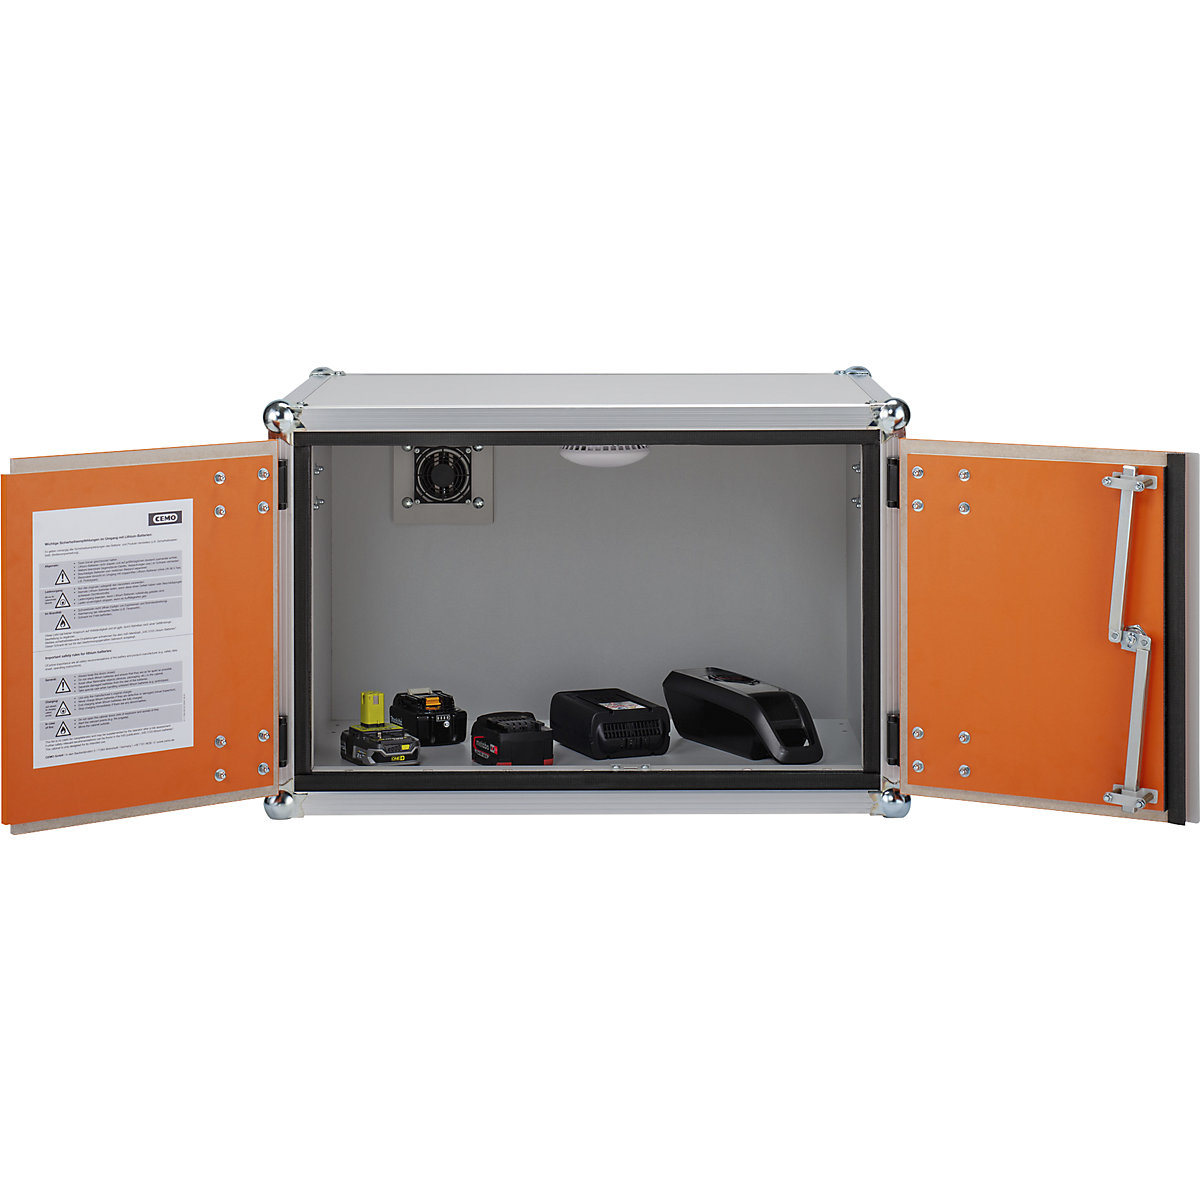 Varnostna omara za skladiščenje akumulatorjev – CEMO (Slika izdelka 3)-2